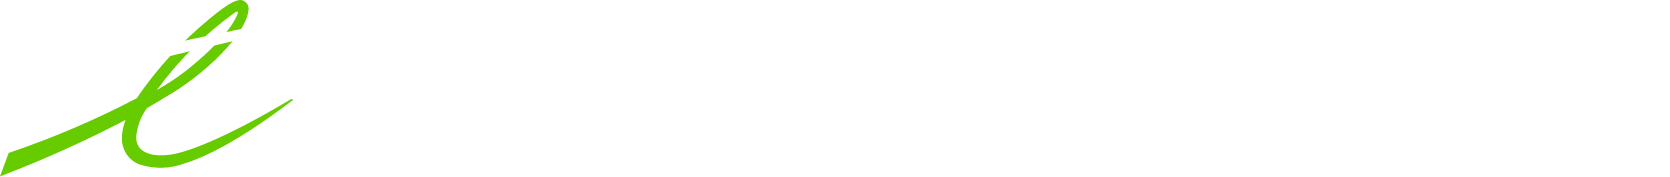 Telus International Logo groß für dunkle Hintergründe (transparentes PNG)